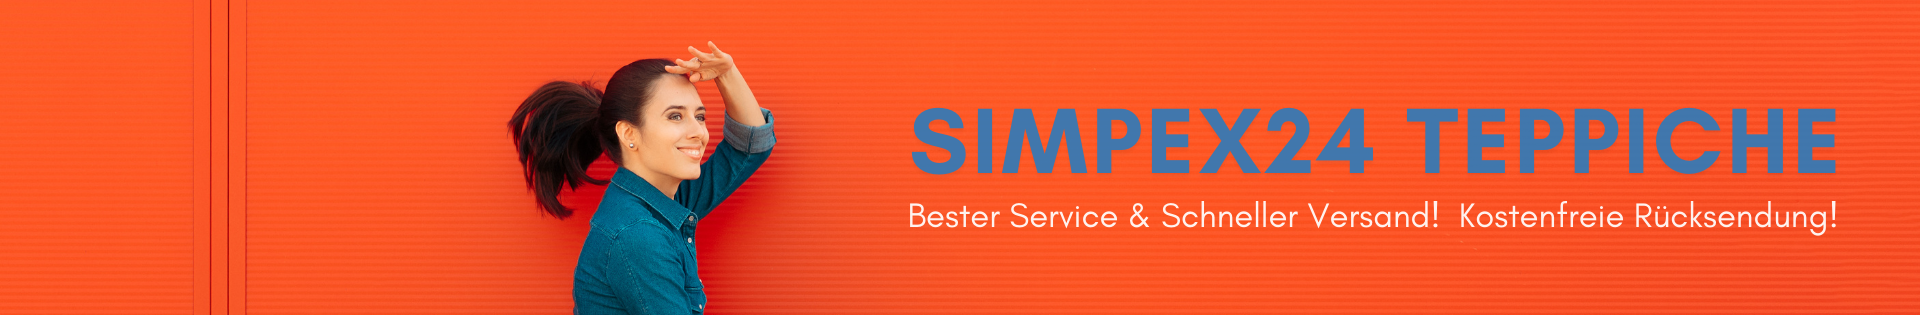       SIMPEX24 steht für moderne Teppiche und exzellenten Service. Ihre Zufriedenheit und ein entspanntes Einkaufserlebnis sind uns wichtig.